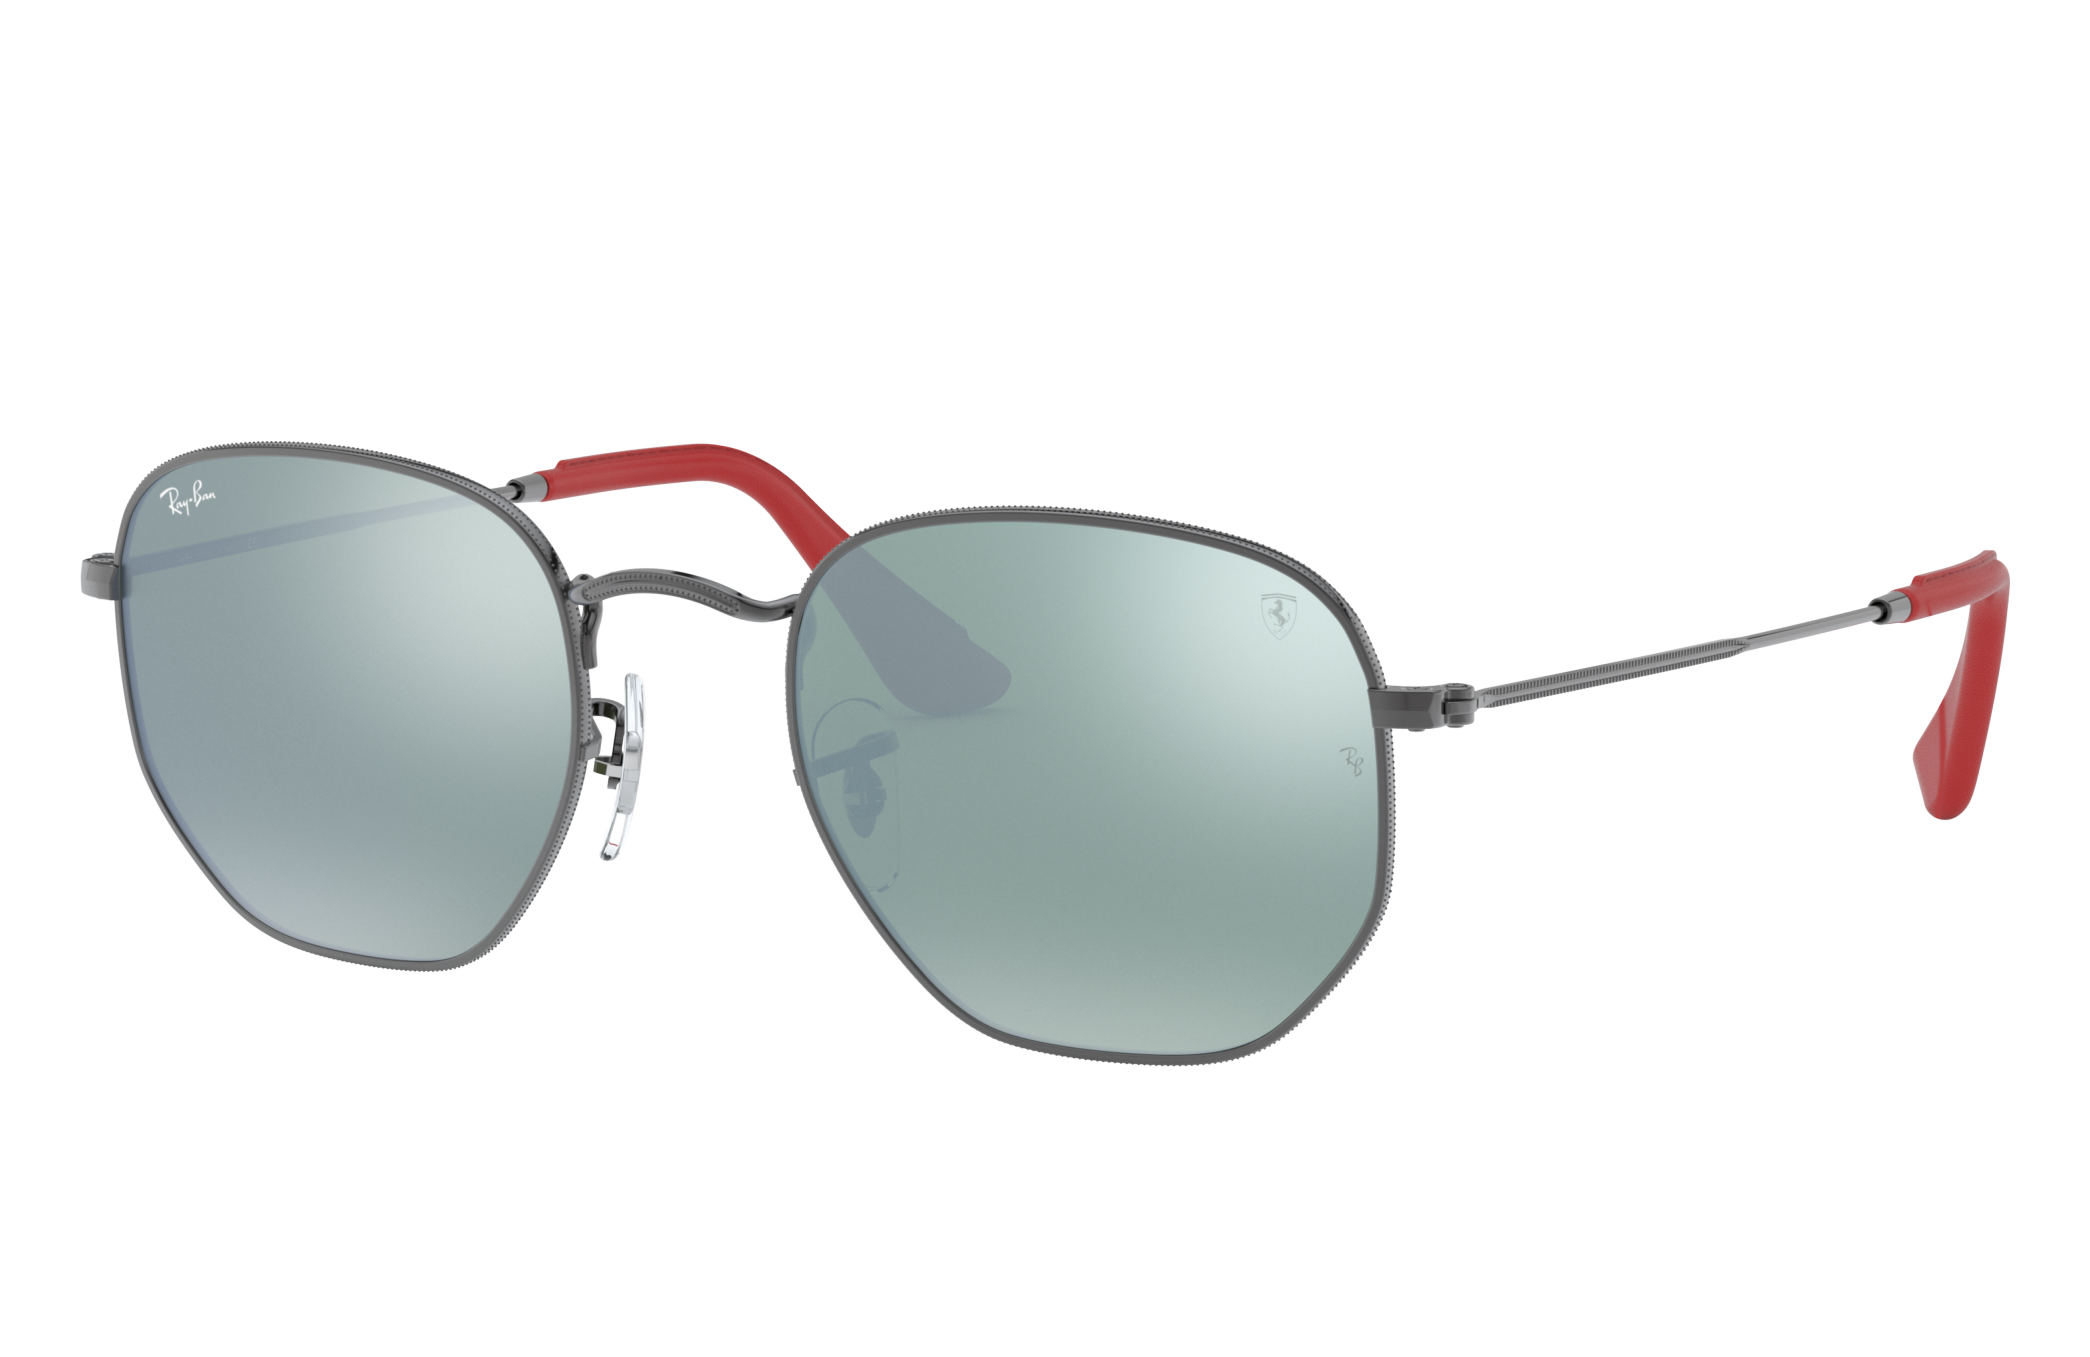 Rb3548nm Scuderia Ferrari Collection Sunglasses in Gunmetal and Silver | Ray -Ban®